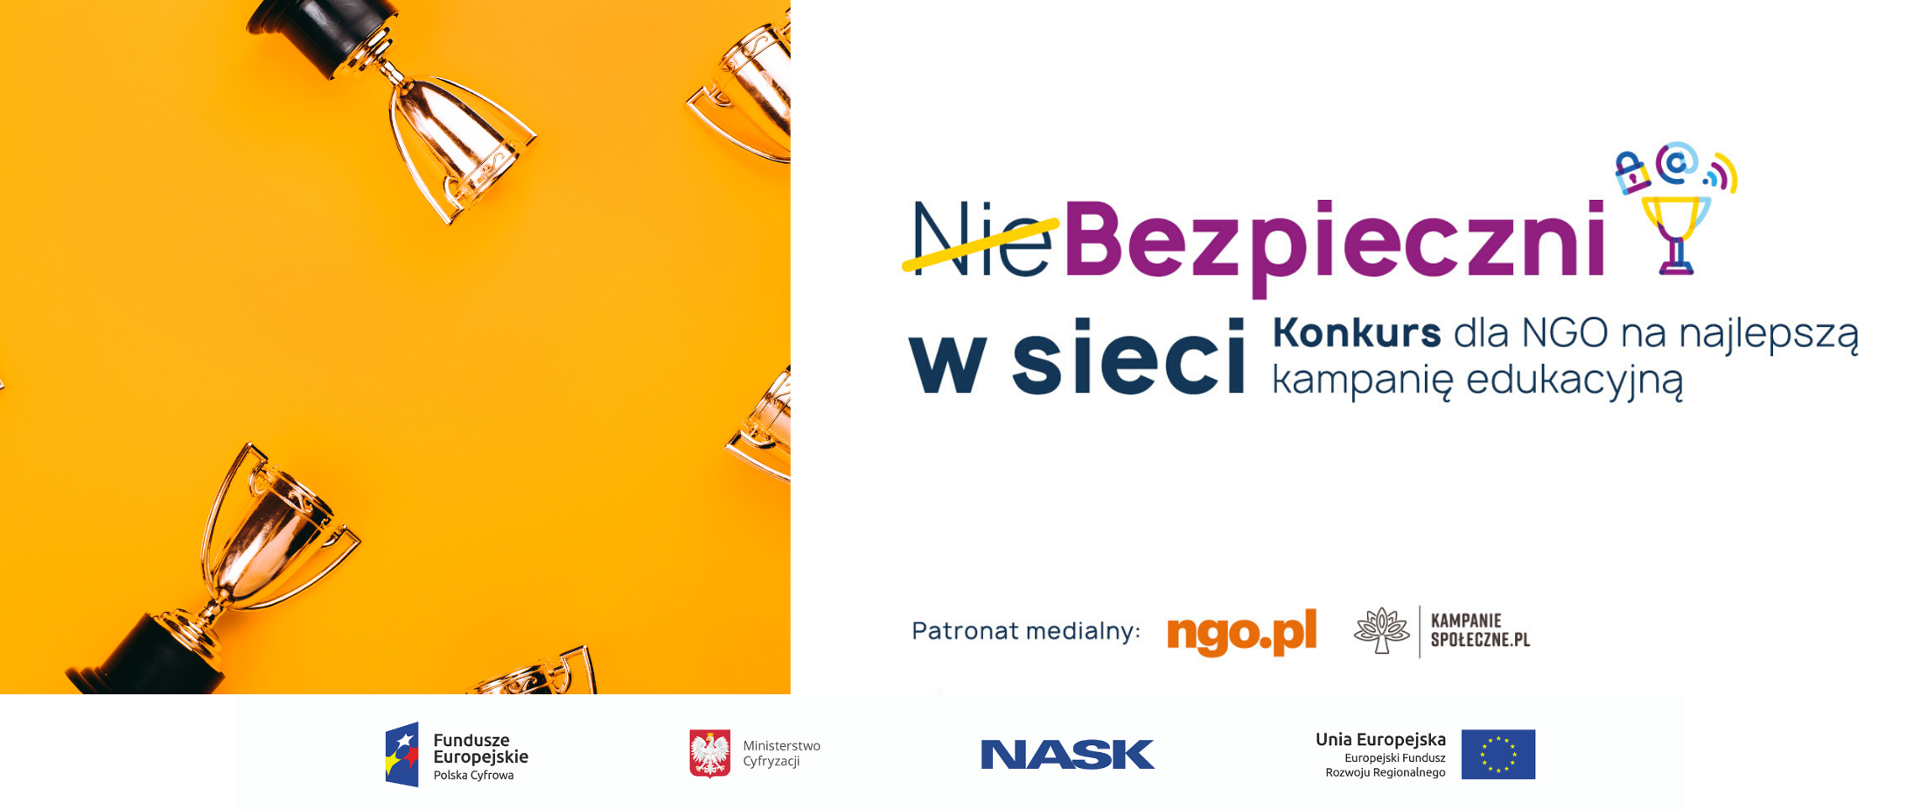 Po lewej stronie na żółtym tle puchary, po prawej na białym tle napisy: Niebezpieczni w sieci. Konkurs dla NGO na najlepszą kampanię edukacyjną. "Nie" zostało przekreślone żółtą kreską. Poniżej logotypy ngo.pl oraz kampaniespołeczne.pl